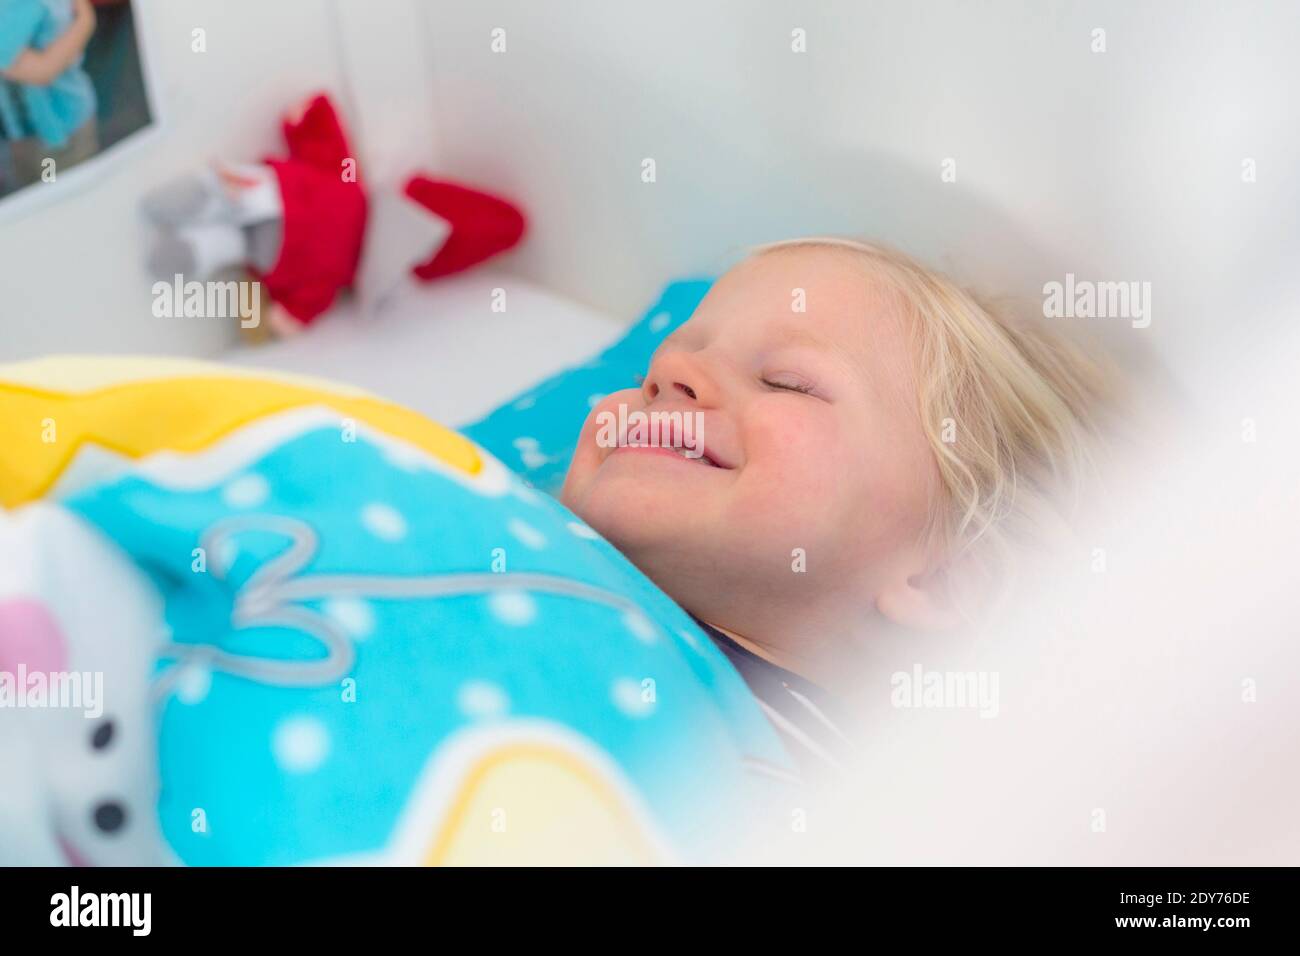 Kleines Mädchen in Bett Stock Photo